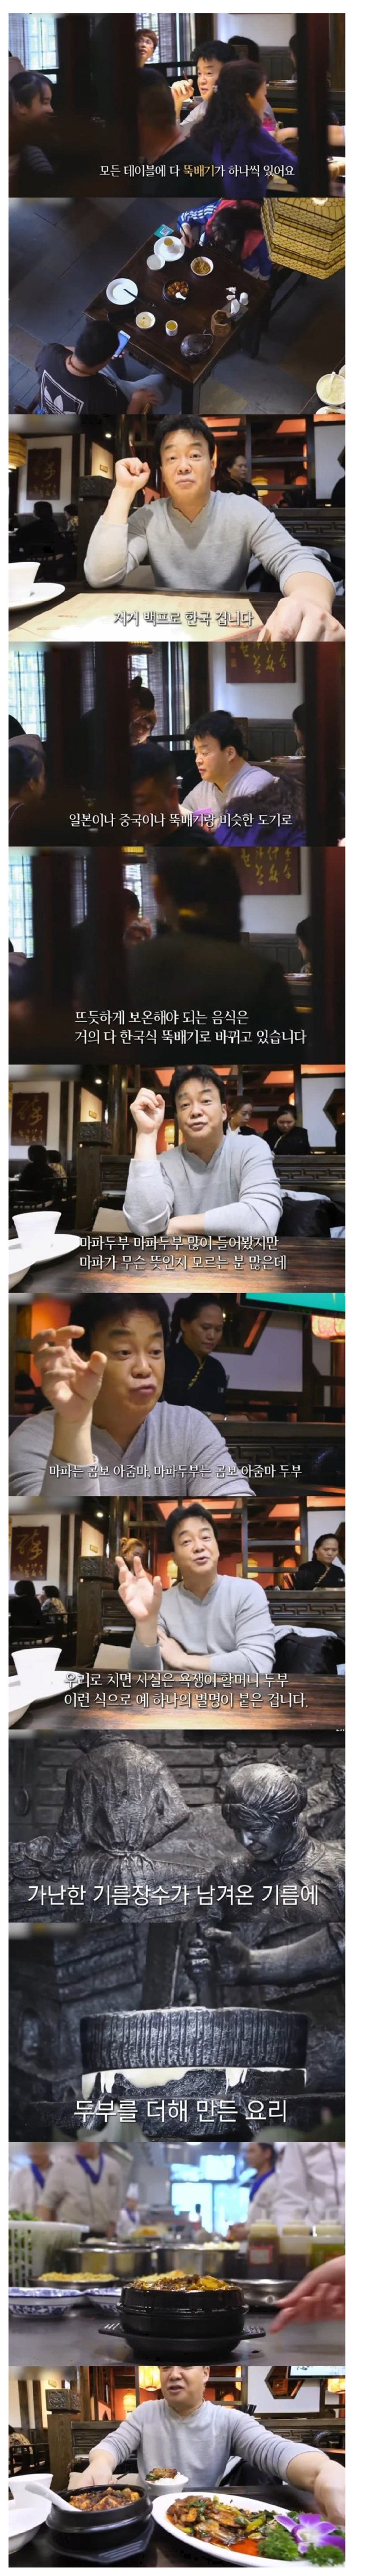 중국 마파두부 식당 점령을 시작한 한국의 뚝배기.jpg